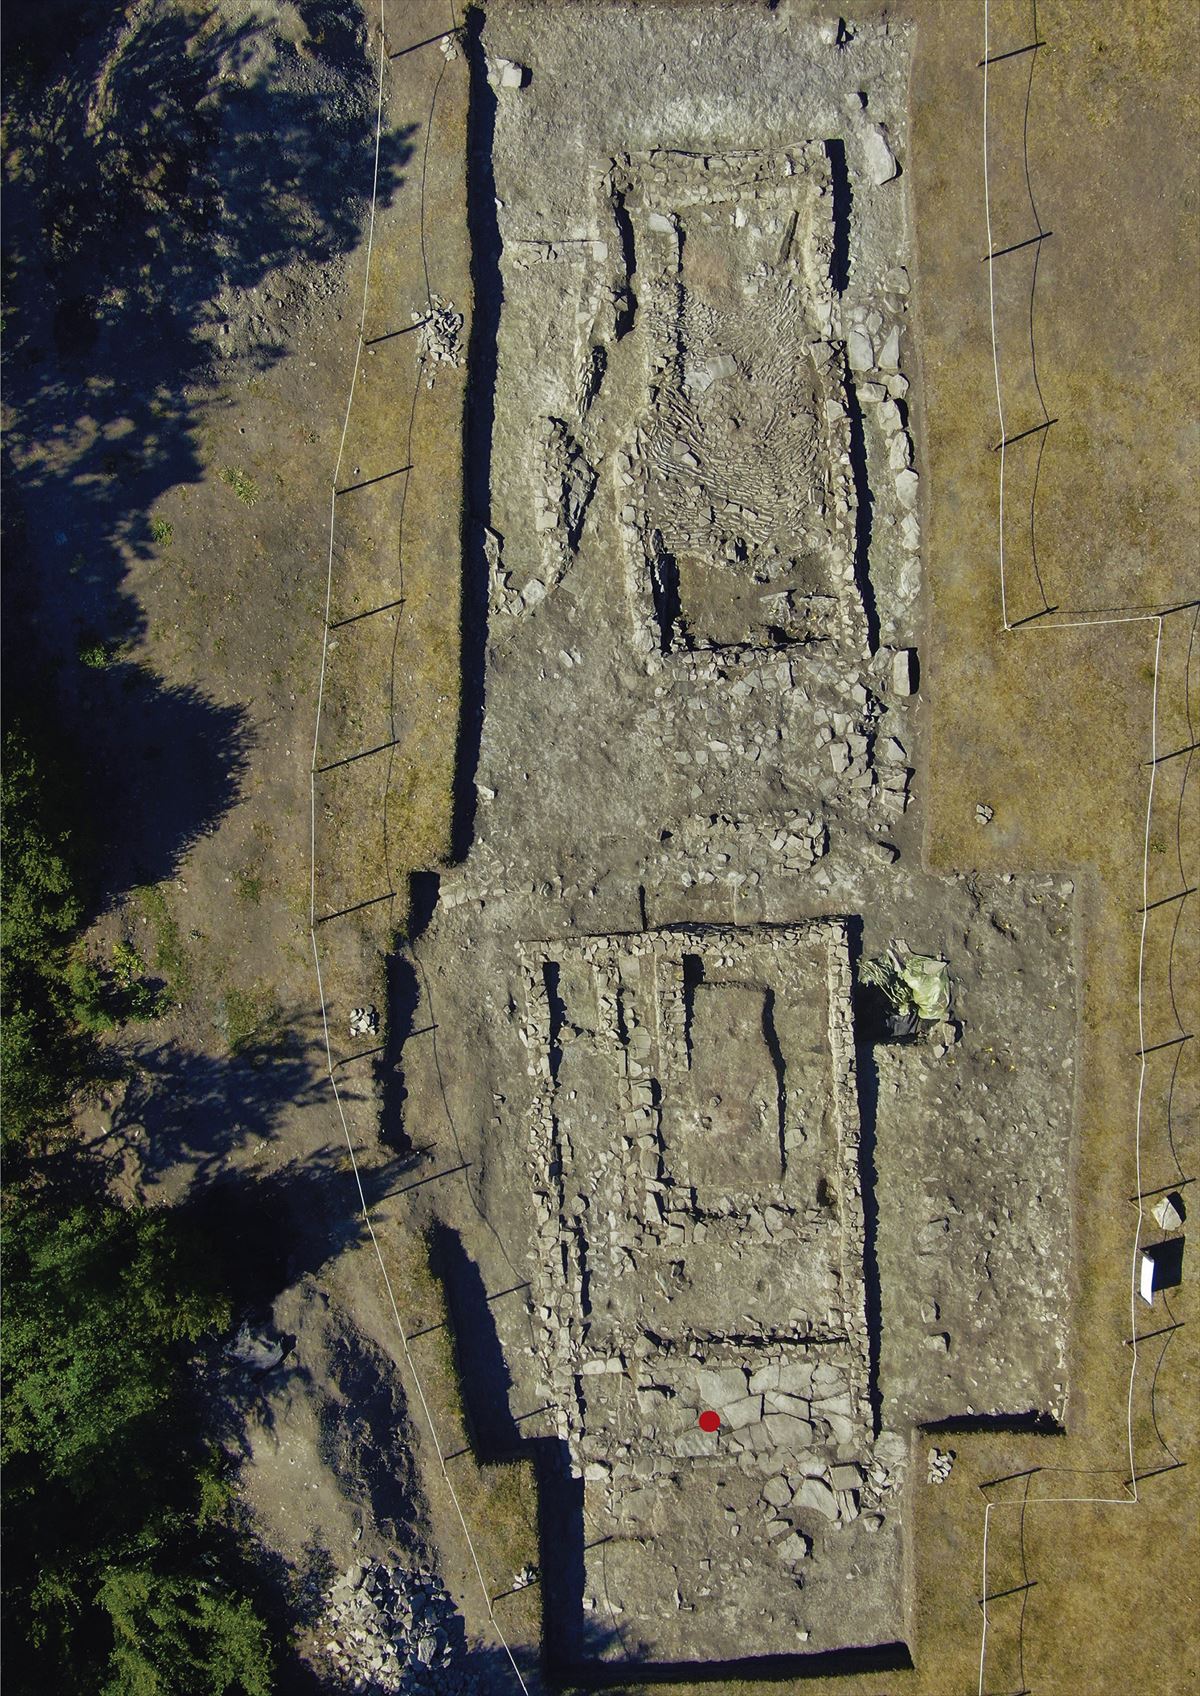 La mano de Irulegi, un descubrimiento fruto de la cooperación entre arqueólogos, restauradores y lingüistas